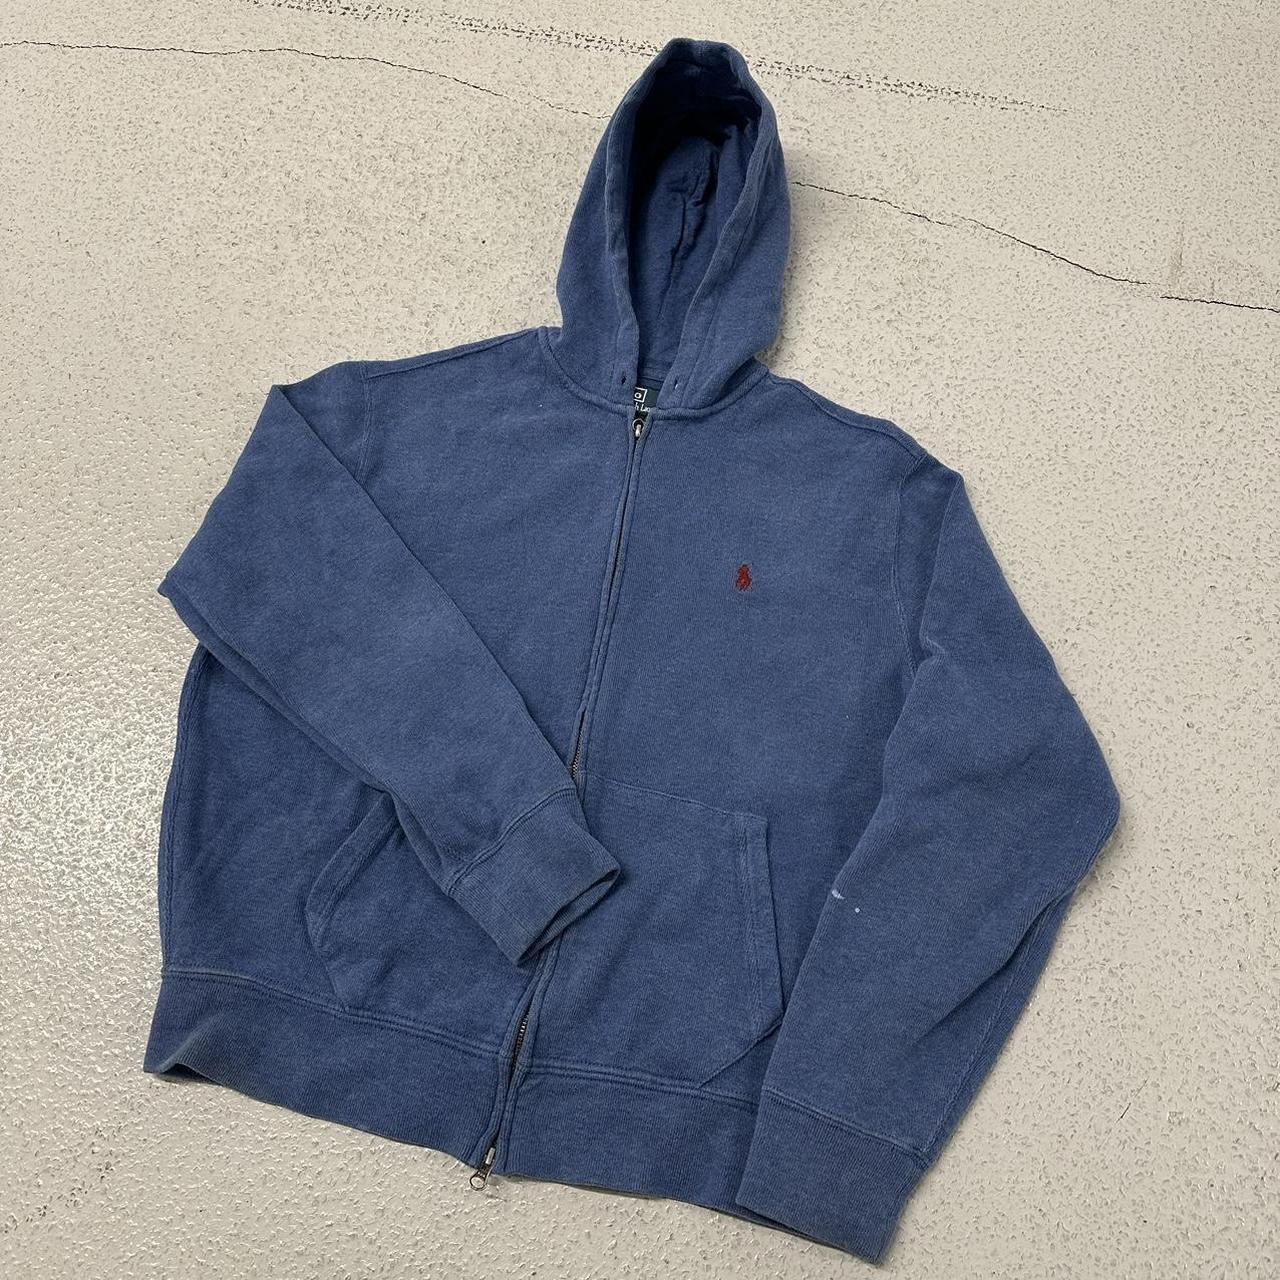 Polo Ralph Lauren zip up hoodie blue large... - Depop